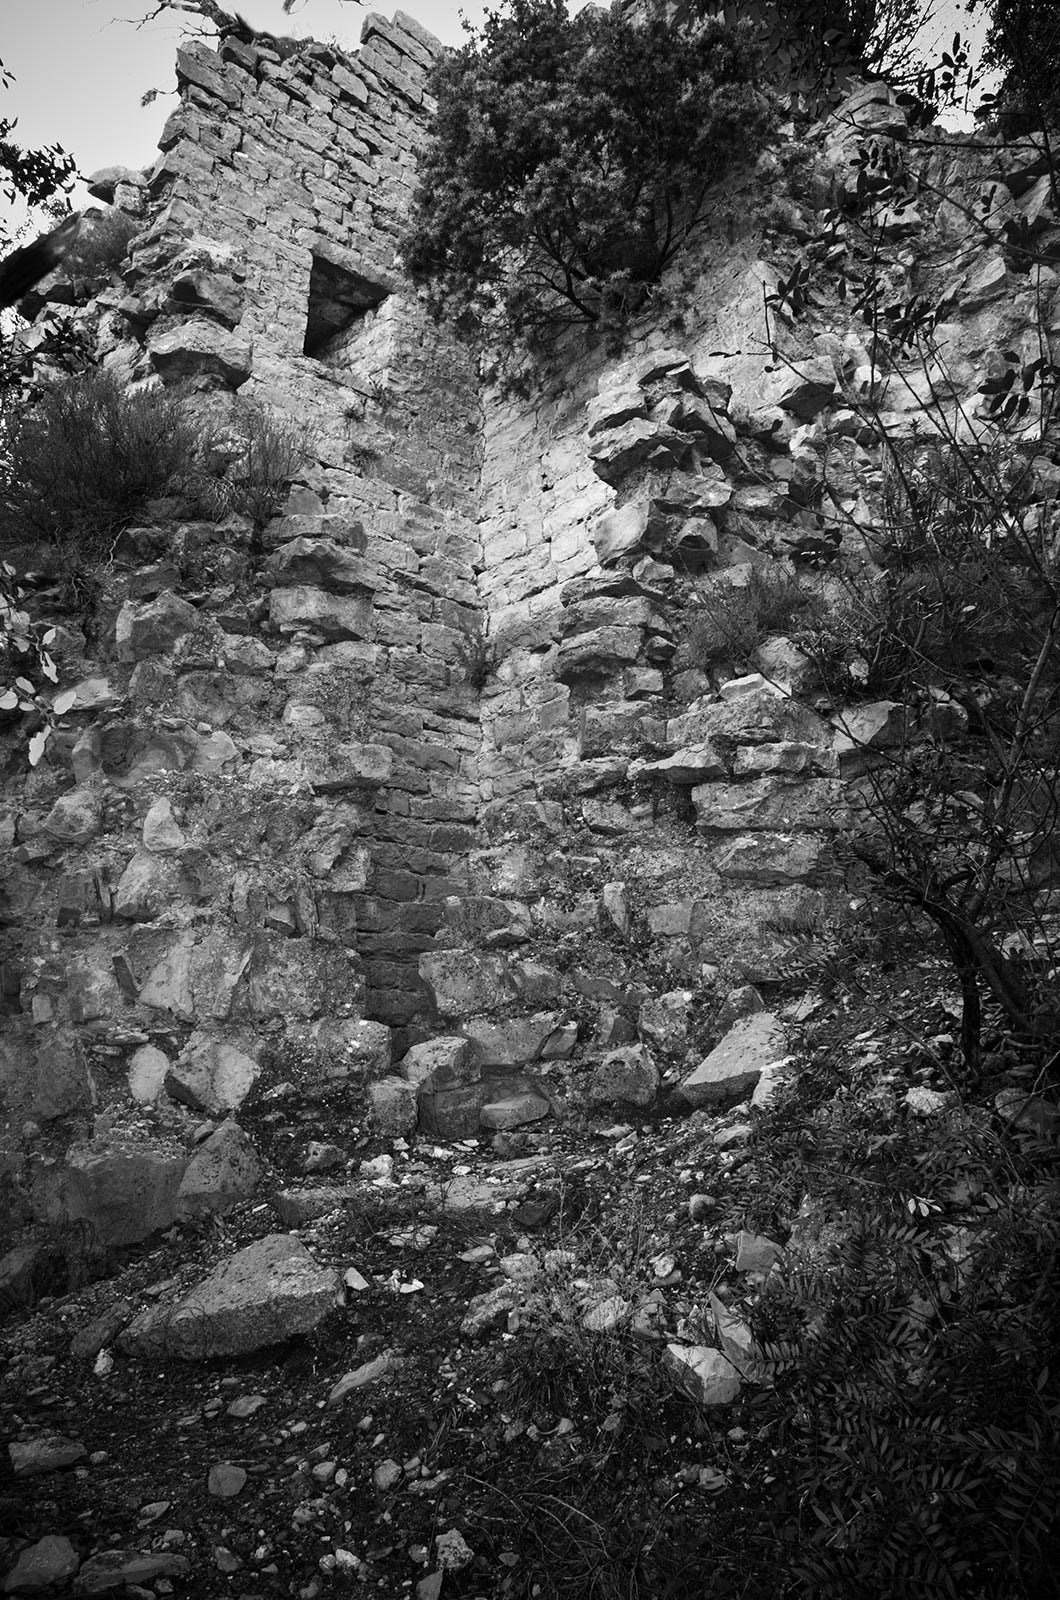 L'ancienne tour de guet "La Tour des Fées" située sur le Mont Coutach